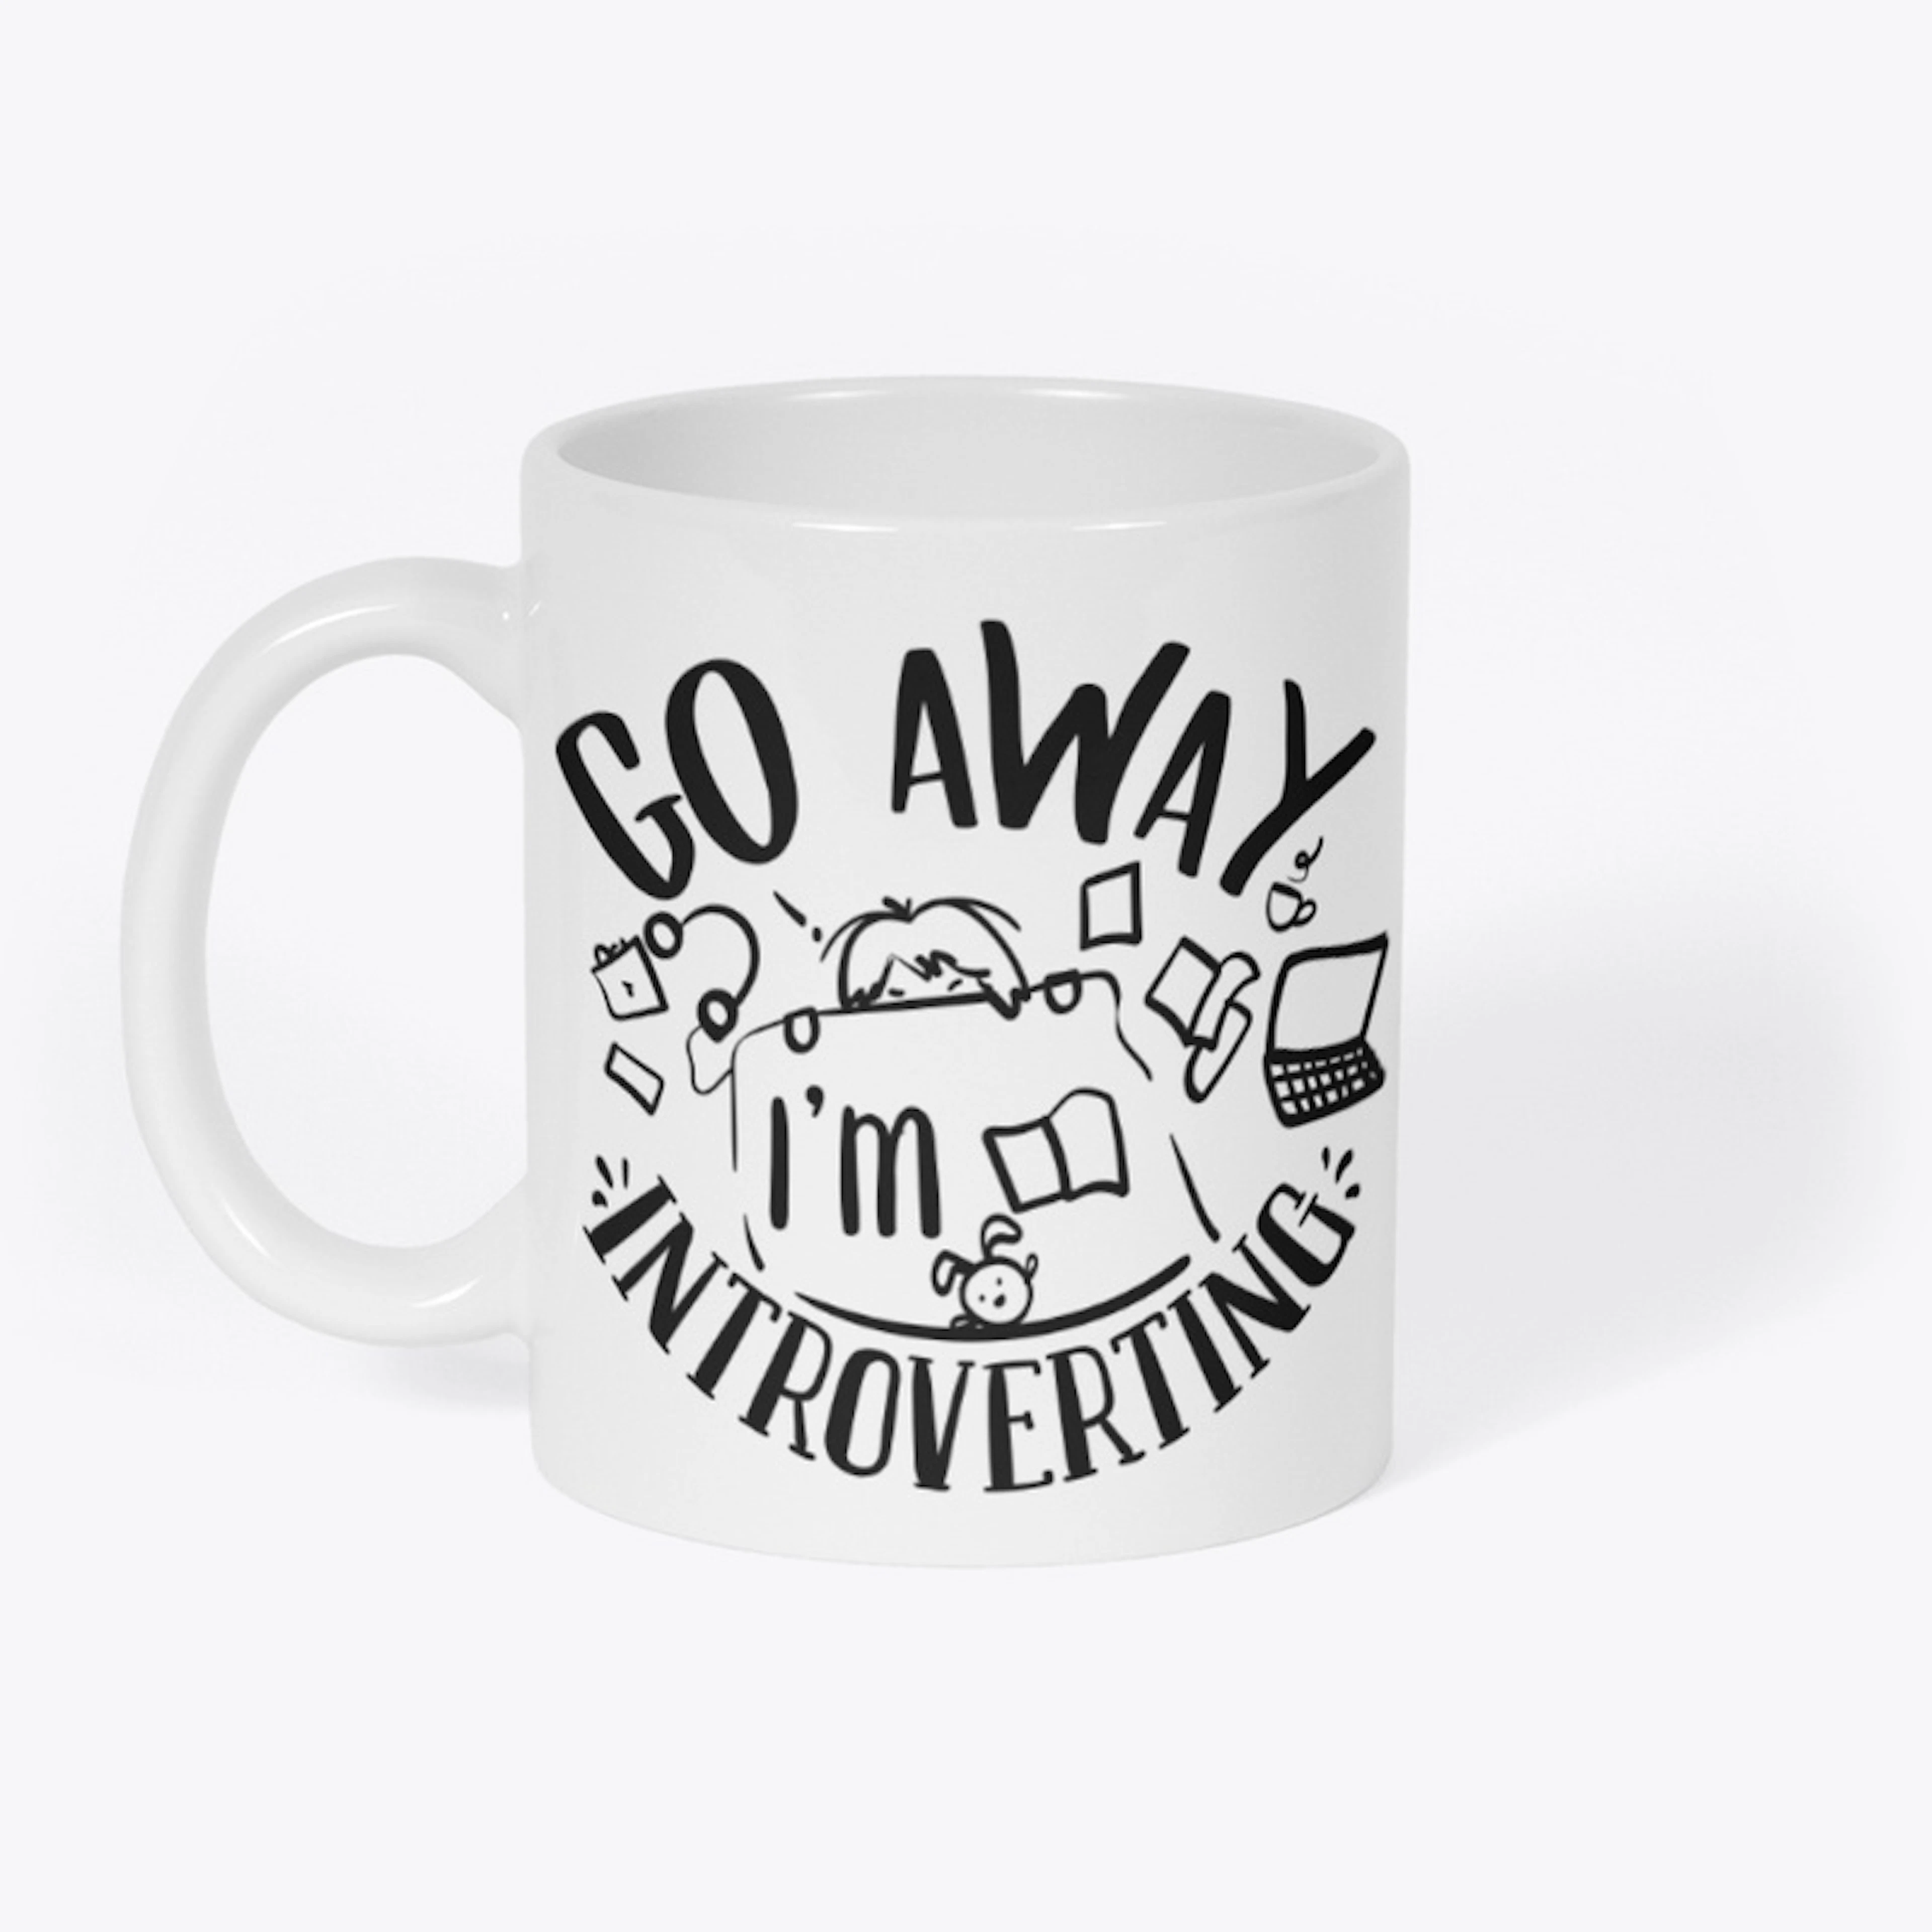 Intoverting Mug!